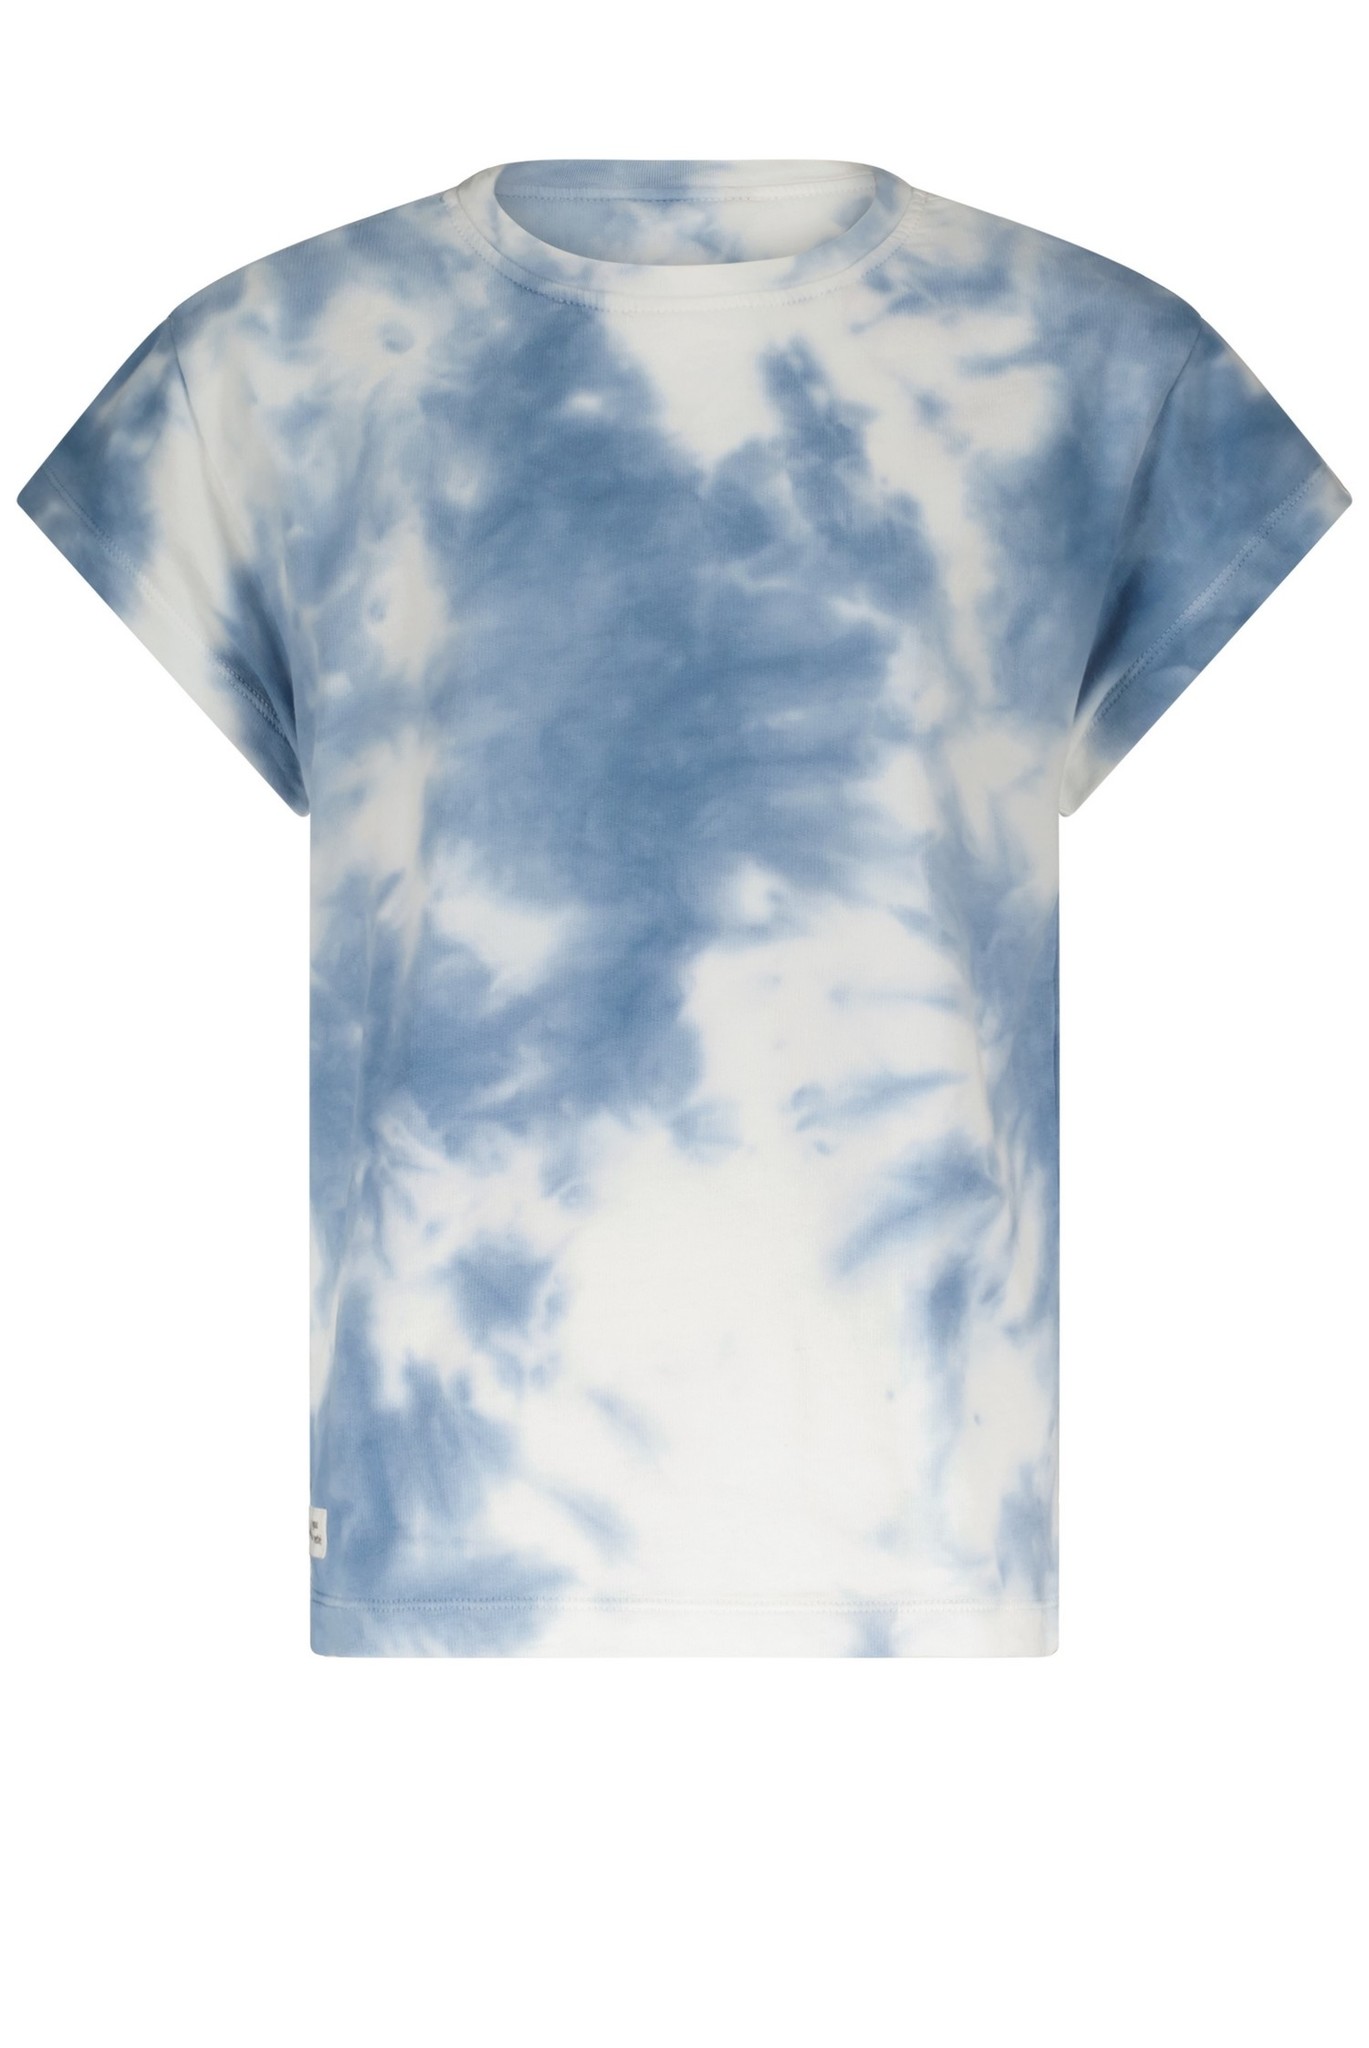 NoBell' - T-Shirt - Denim Sea - Maat 146-152